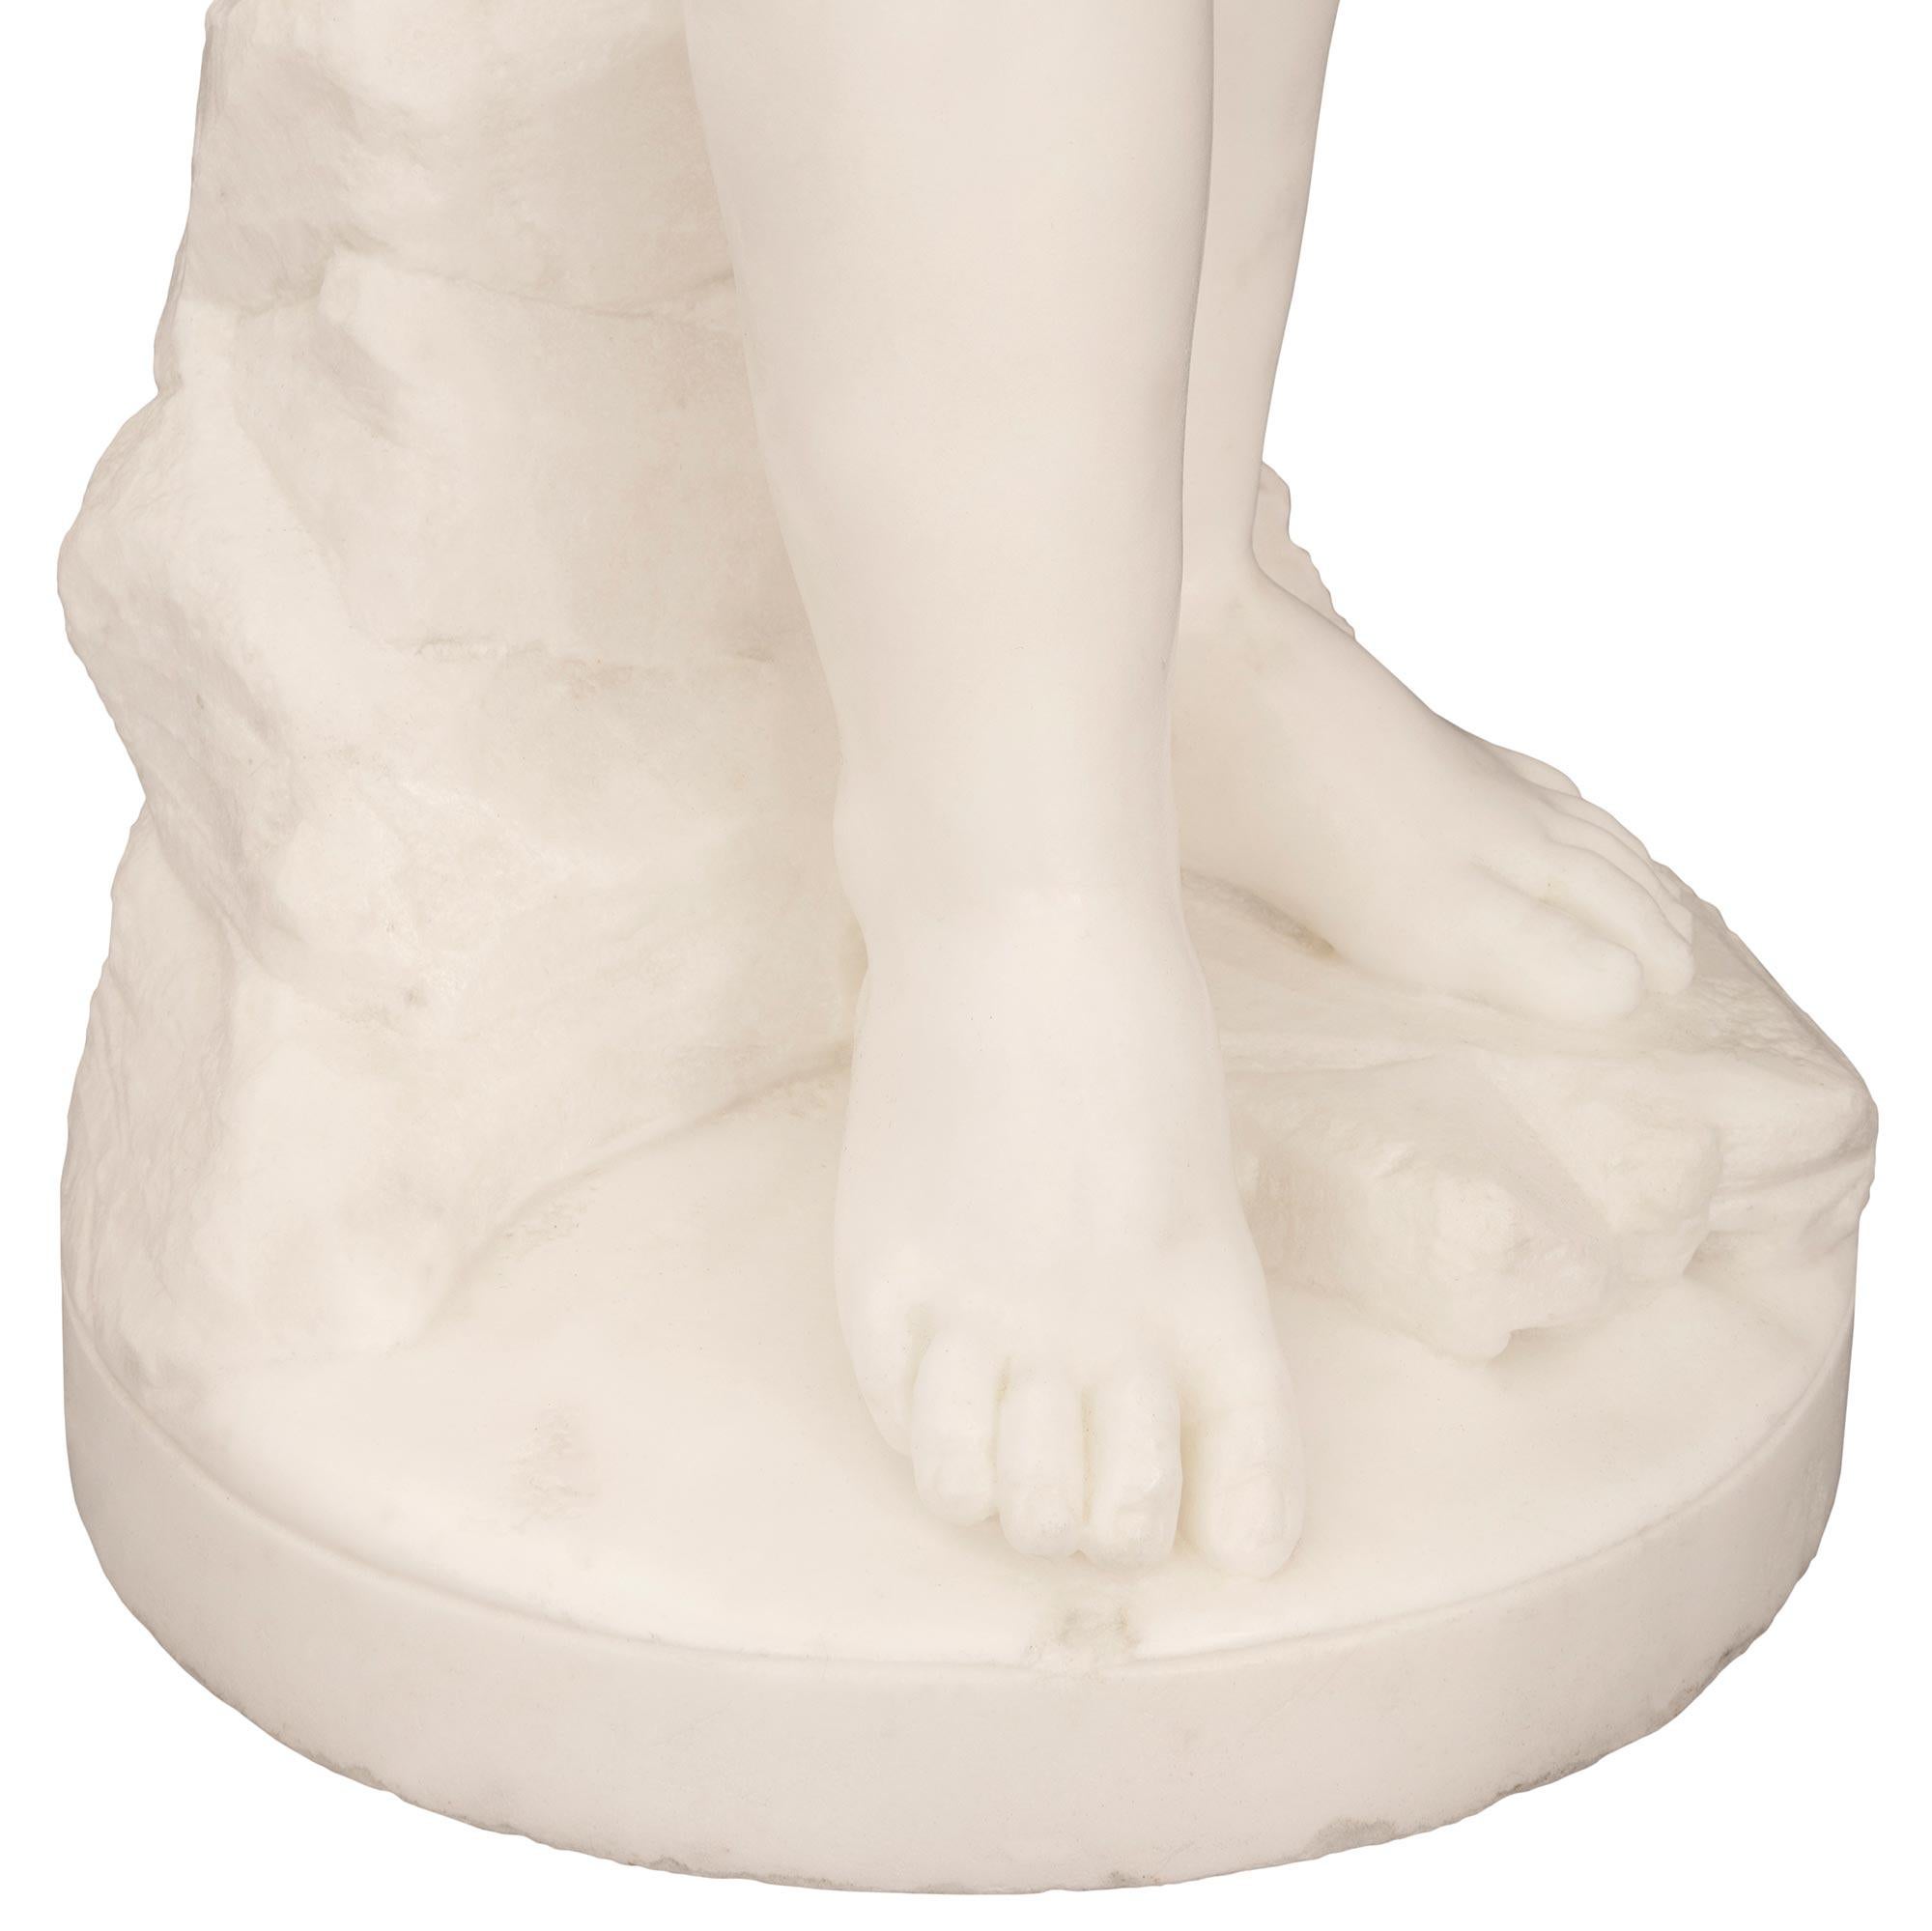 Italian 19th Century White Carrara Marble Statue Signed F. Mariotti Scul For Sale 5